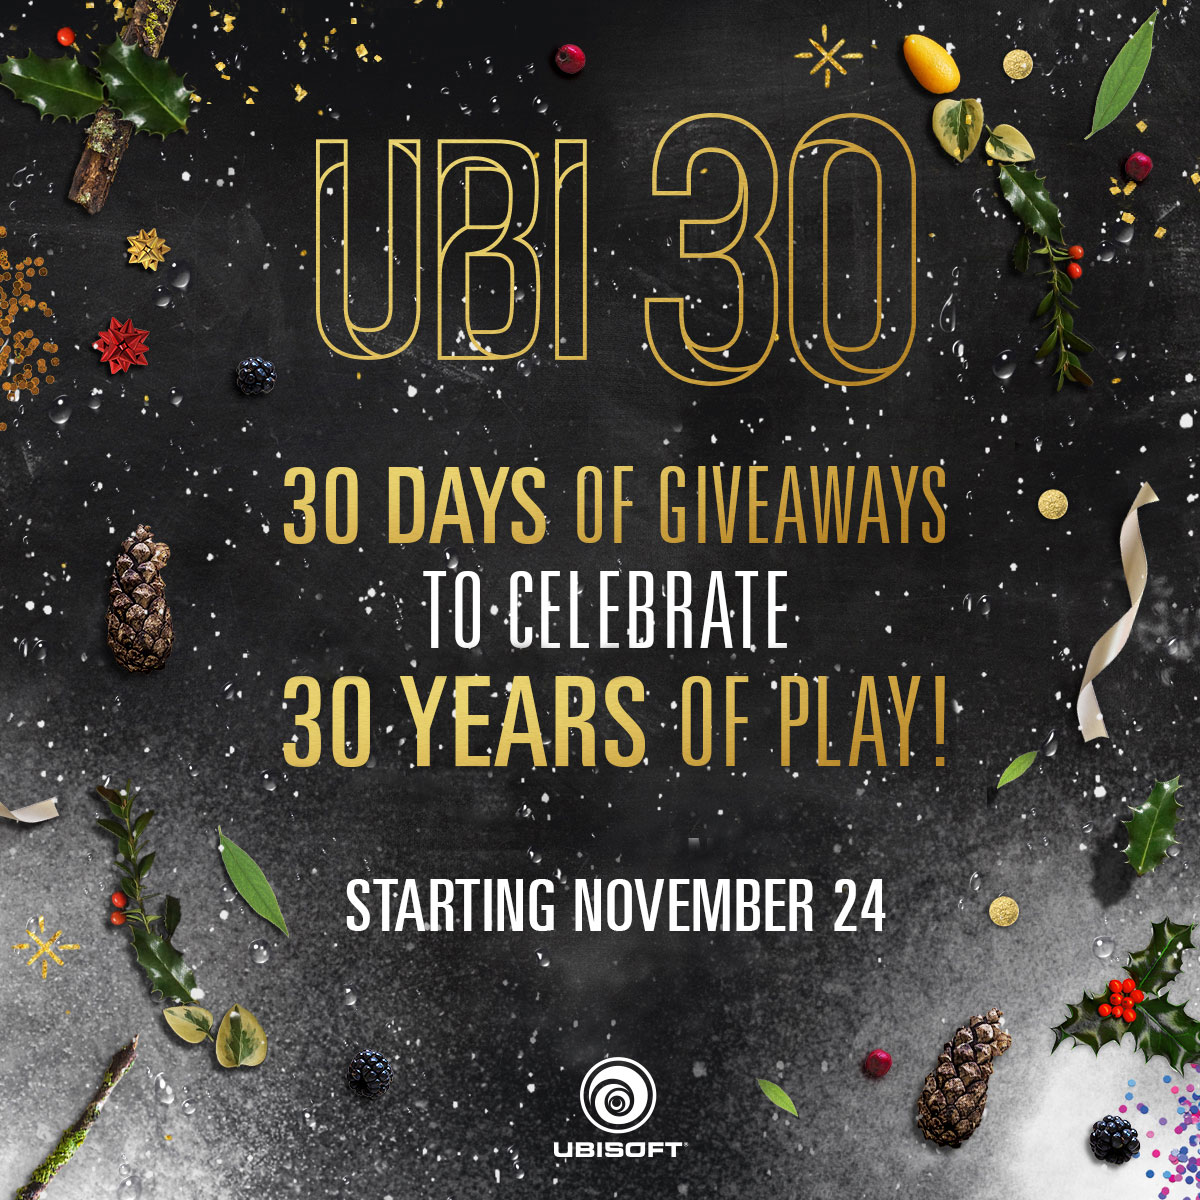 New Ubi 30 Promotion